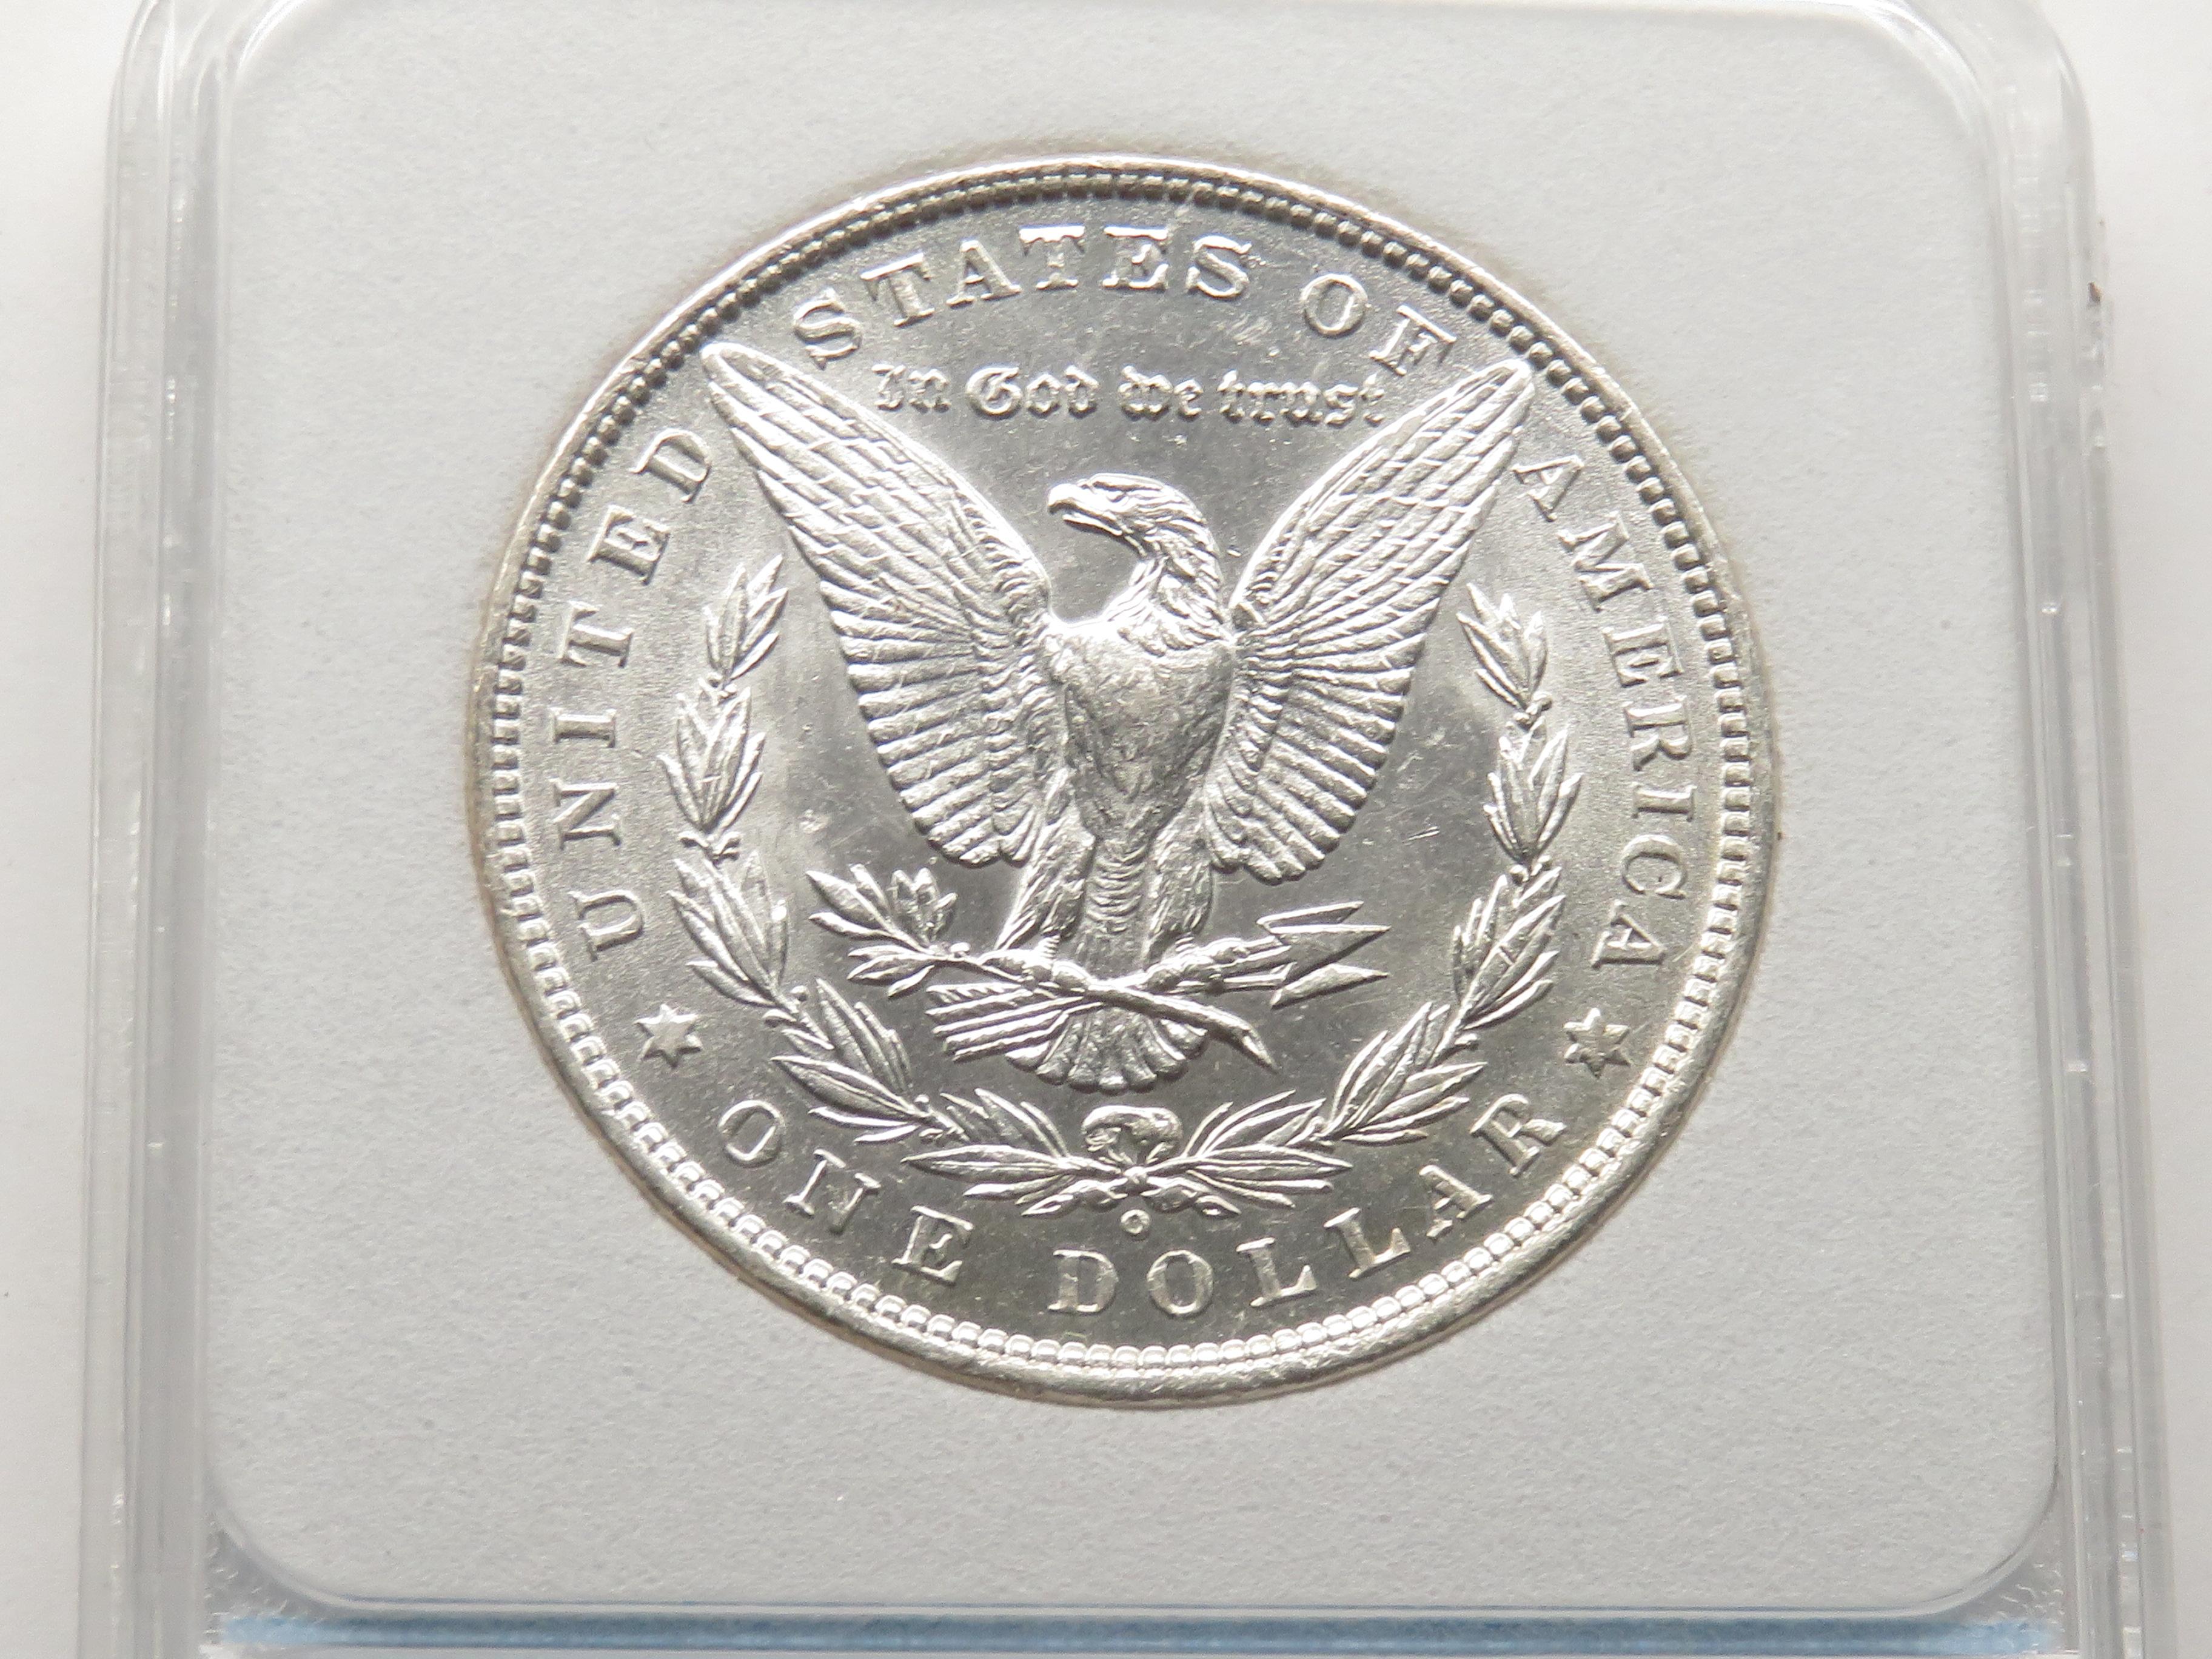 Morgan $ 1880-O NNC MS65